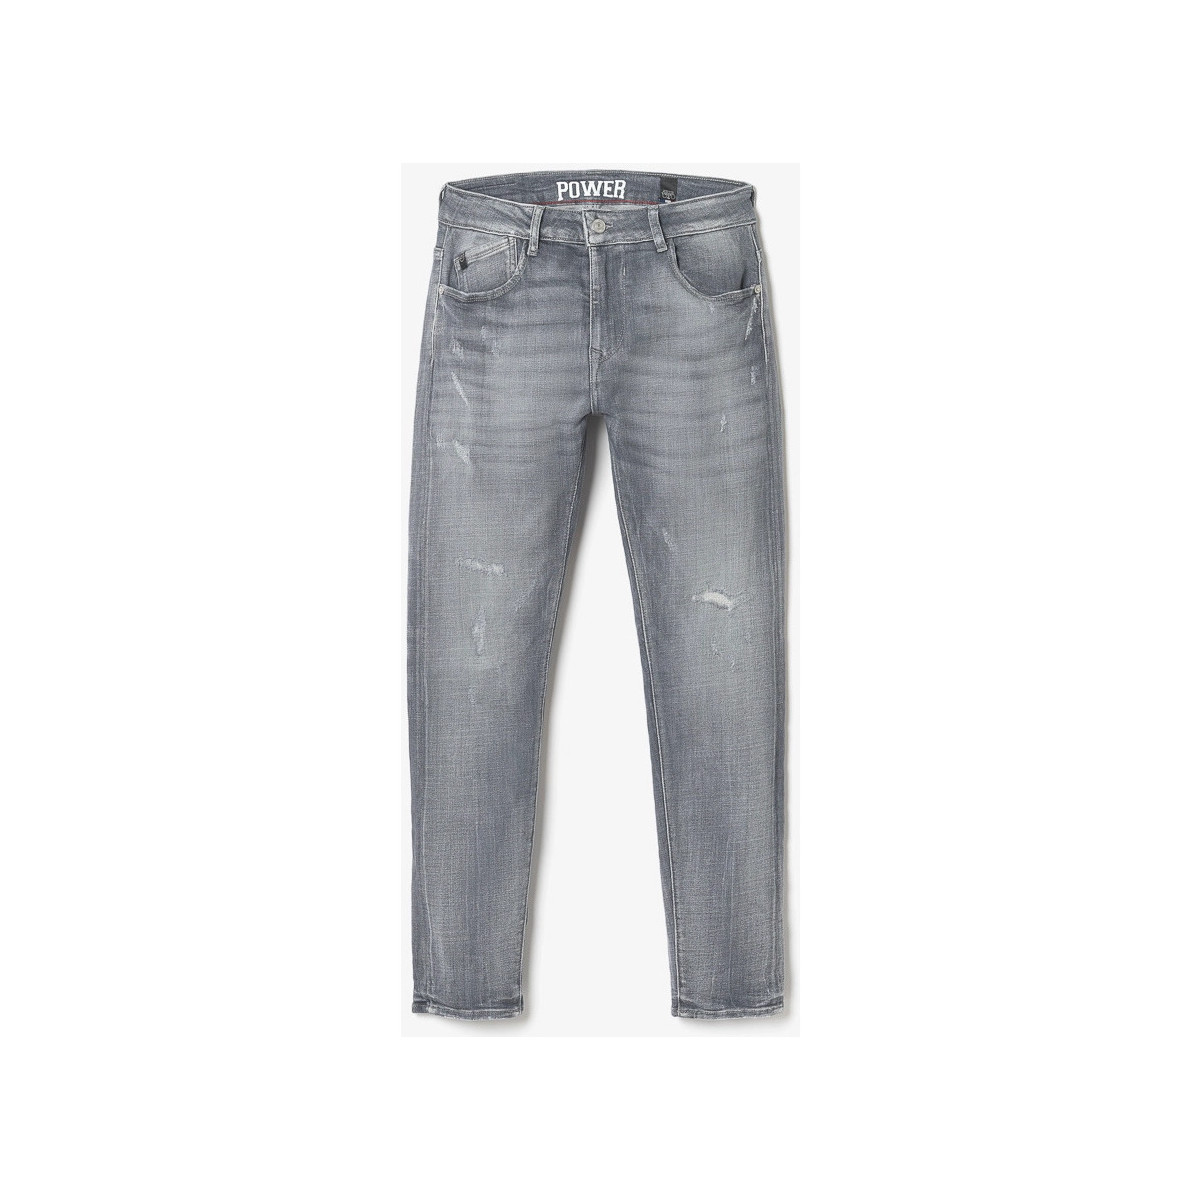 Le Temps des Cerises Gris Power skinny 7/8ème jeans destroy gris ryoJX9e3